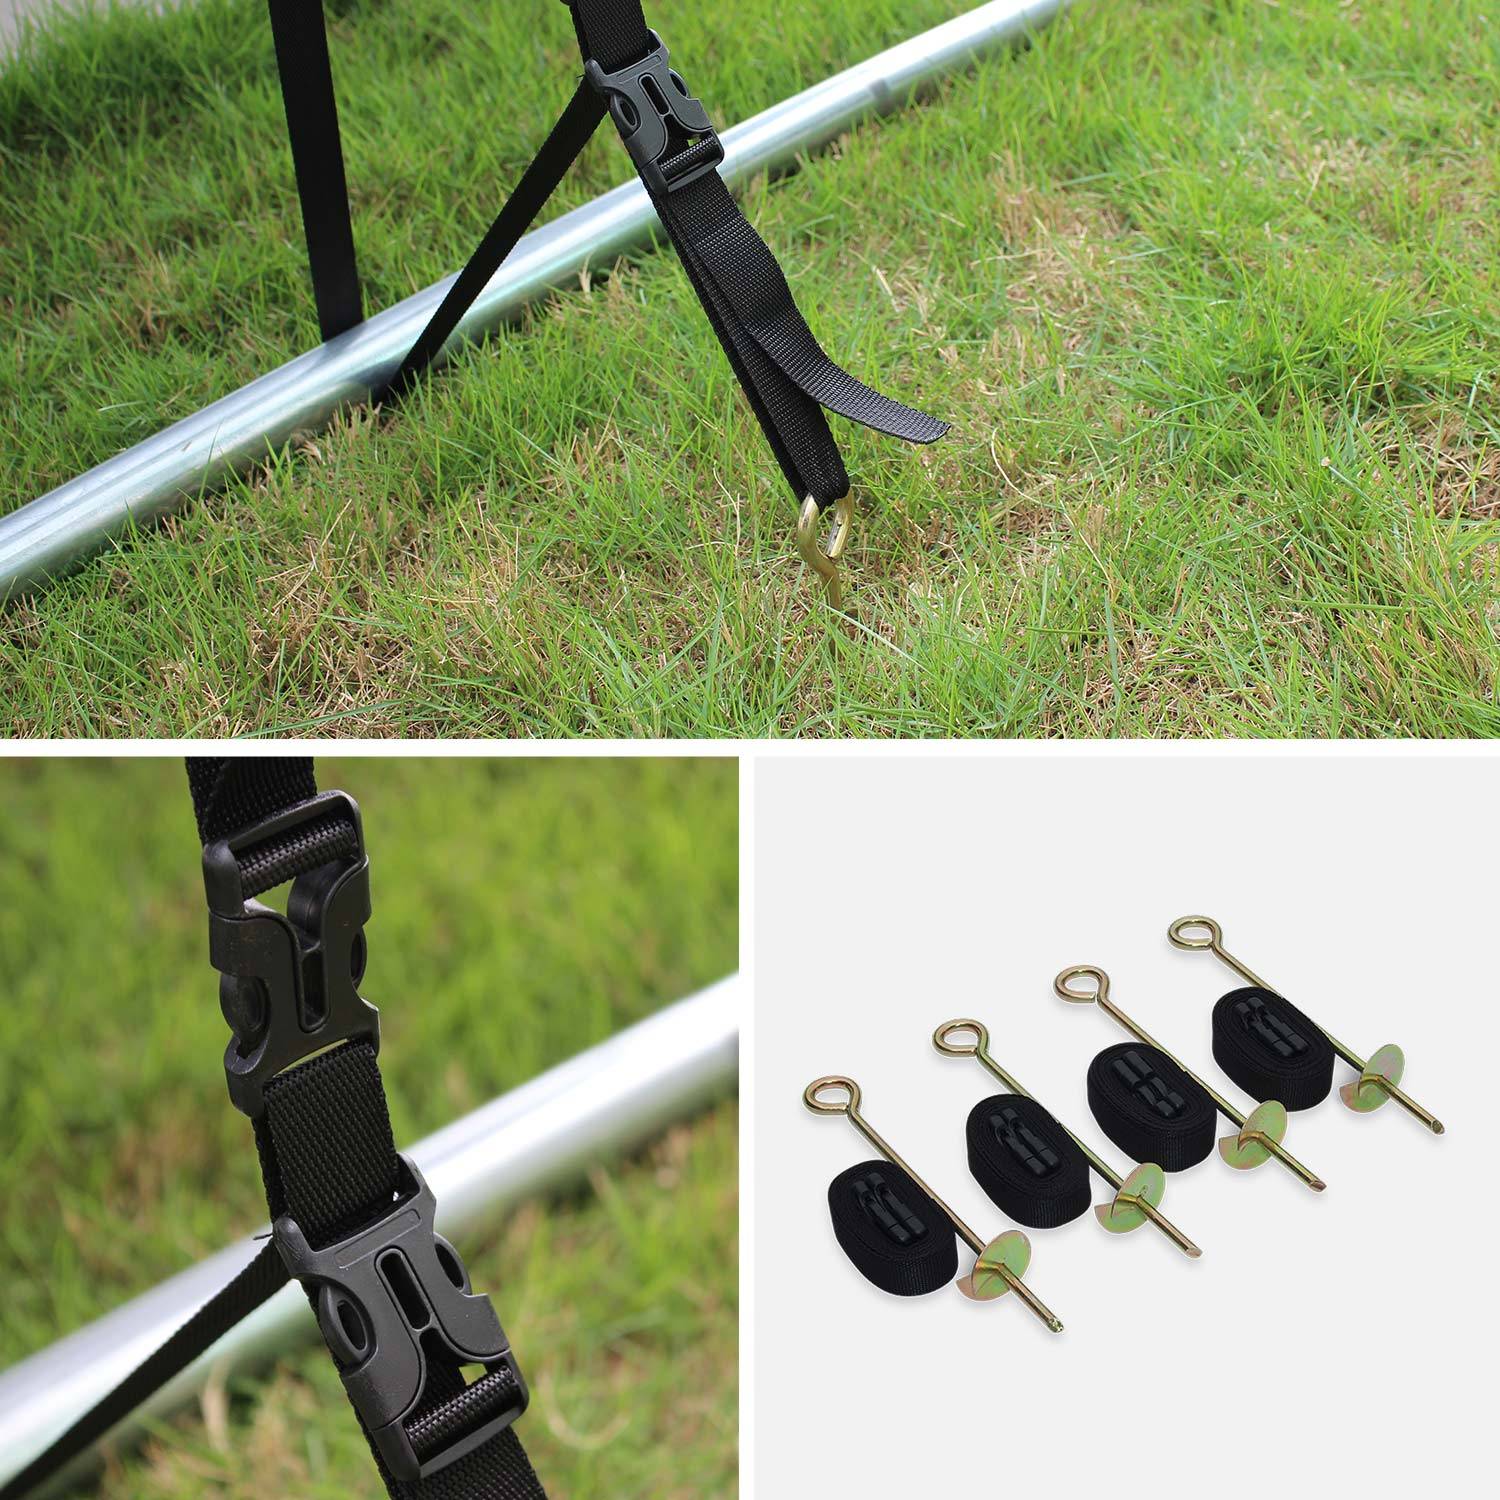 Pakket met accessoires voor trampoline Ø400cm Mercure met een ladder, een beschermhoes, een opbergnet voor schoenen en een verankeringskit Photo5